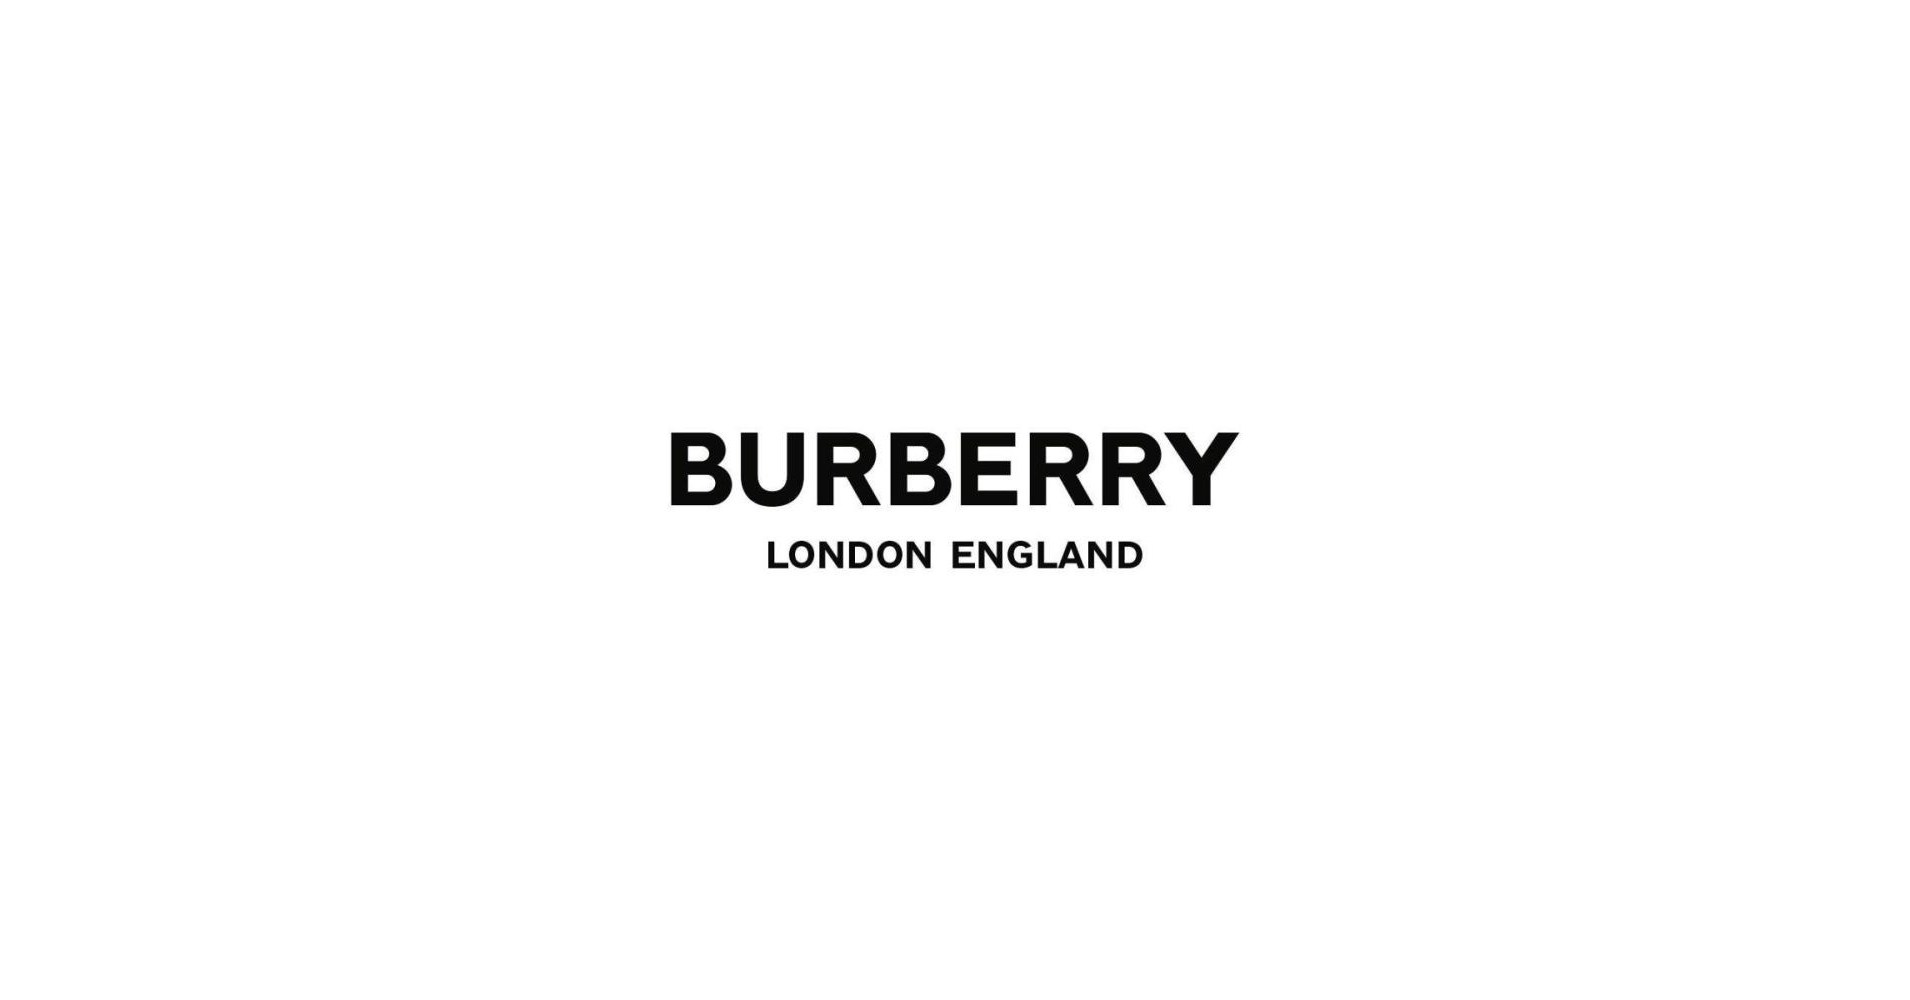 Логотип Burberry - топ новых бесплатных фото